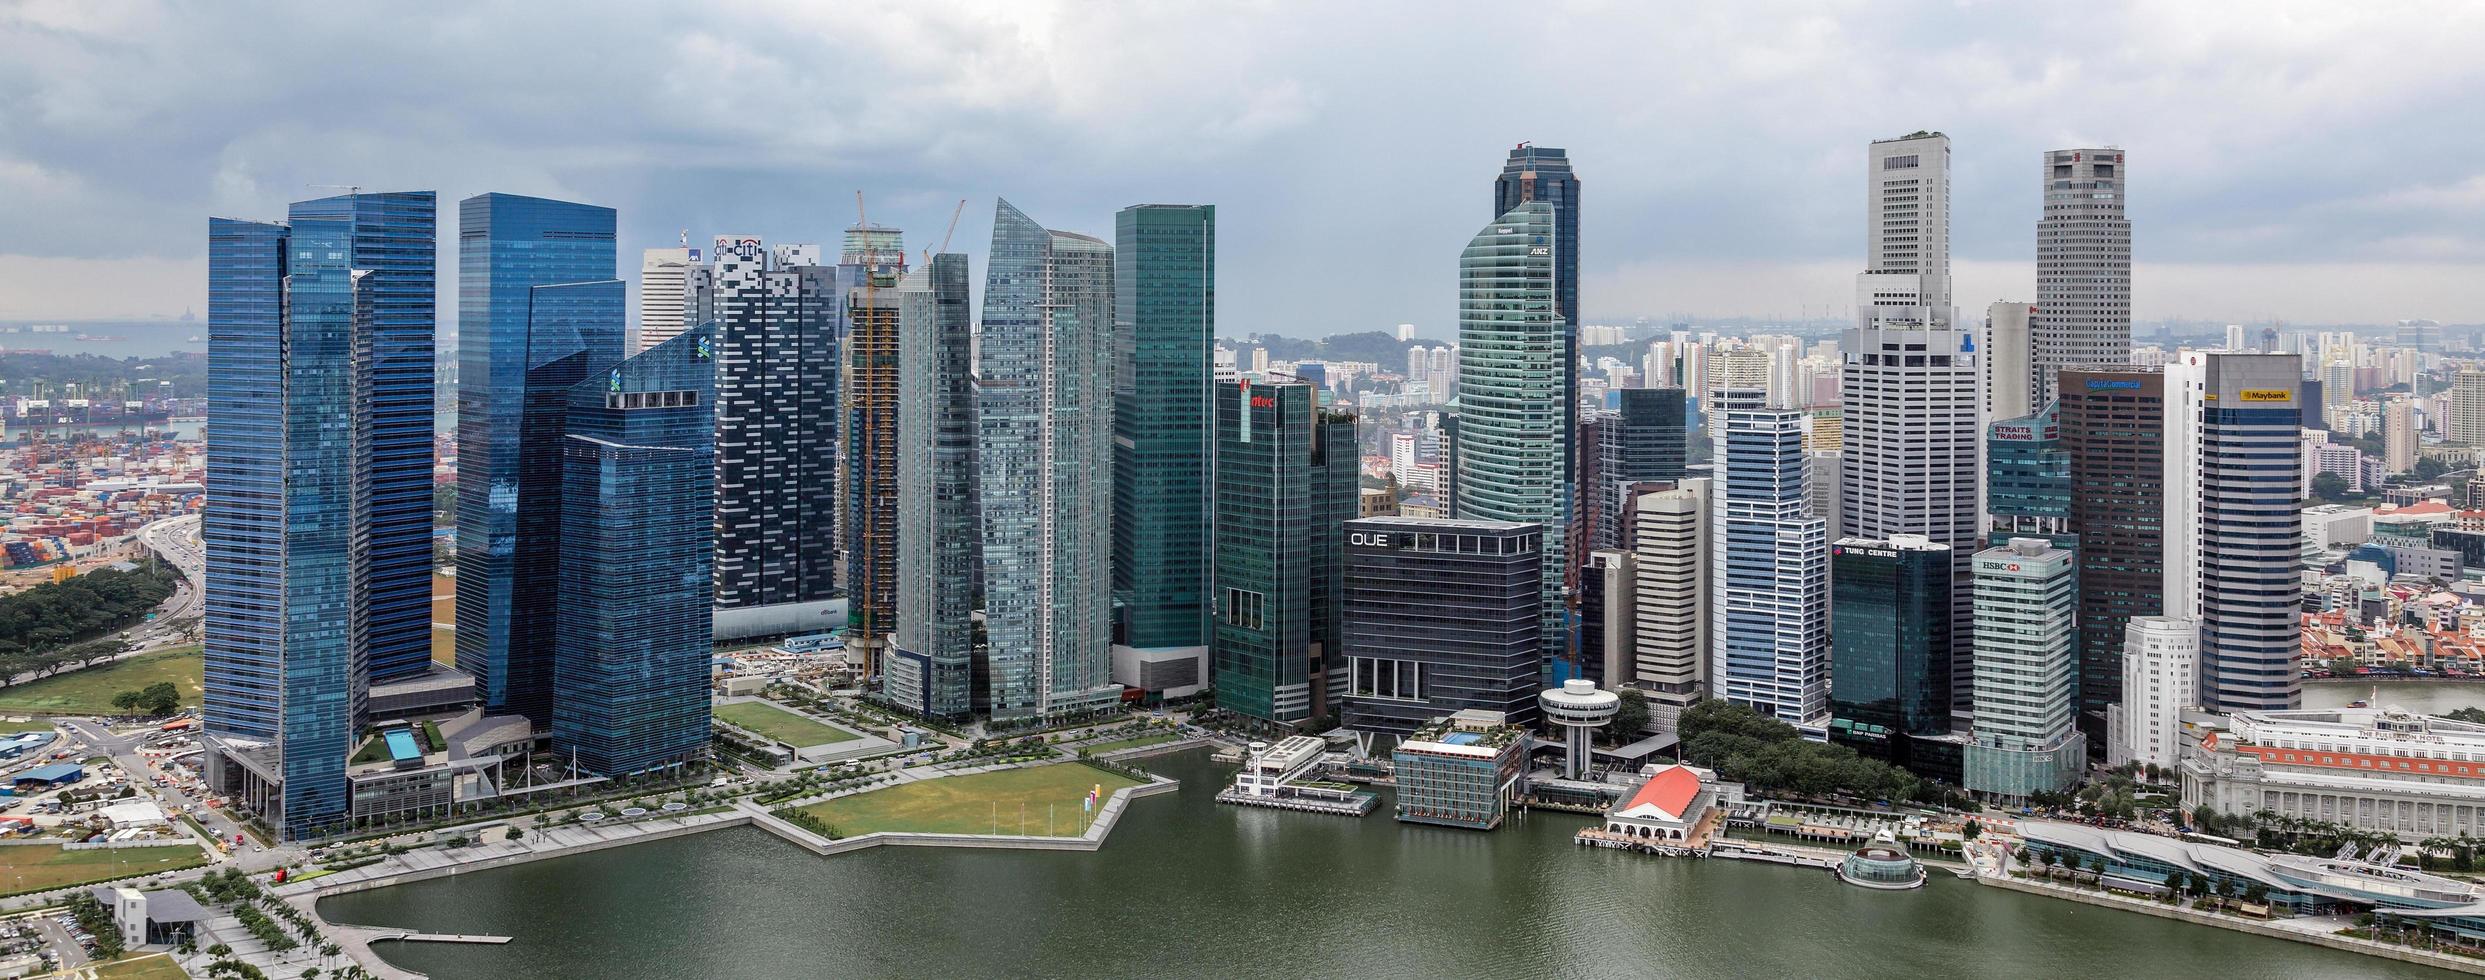 singapores skyline på en molnig dag foto